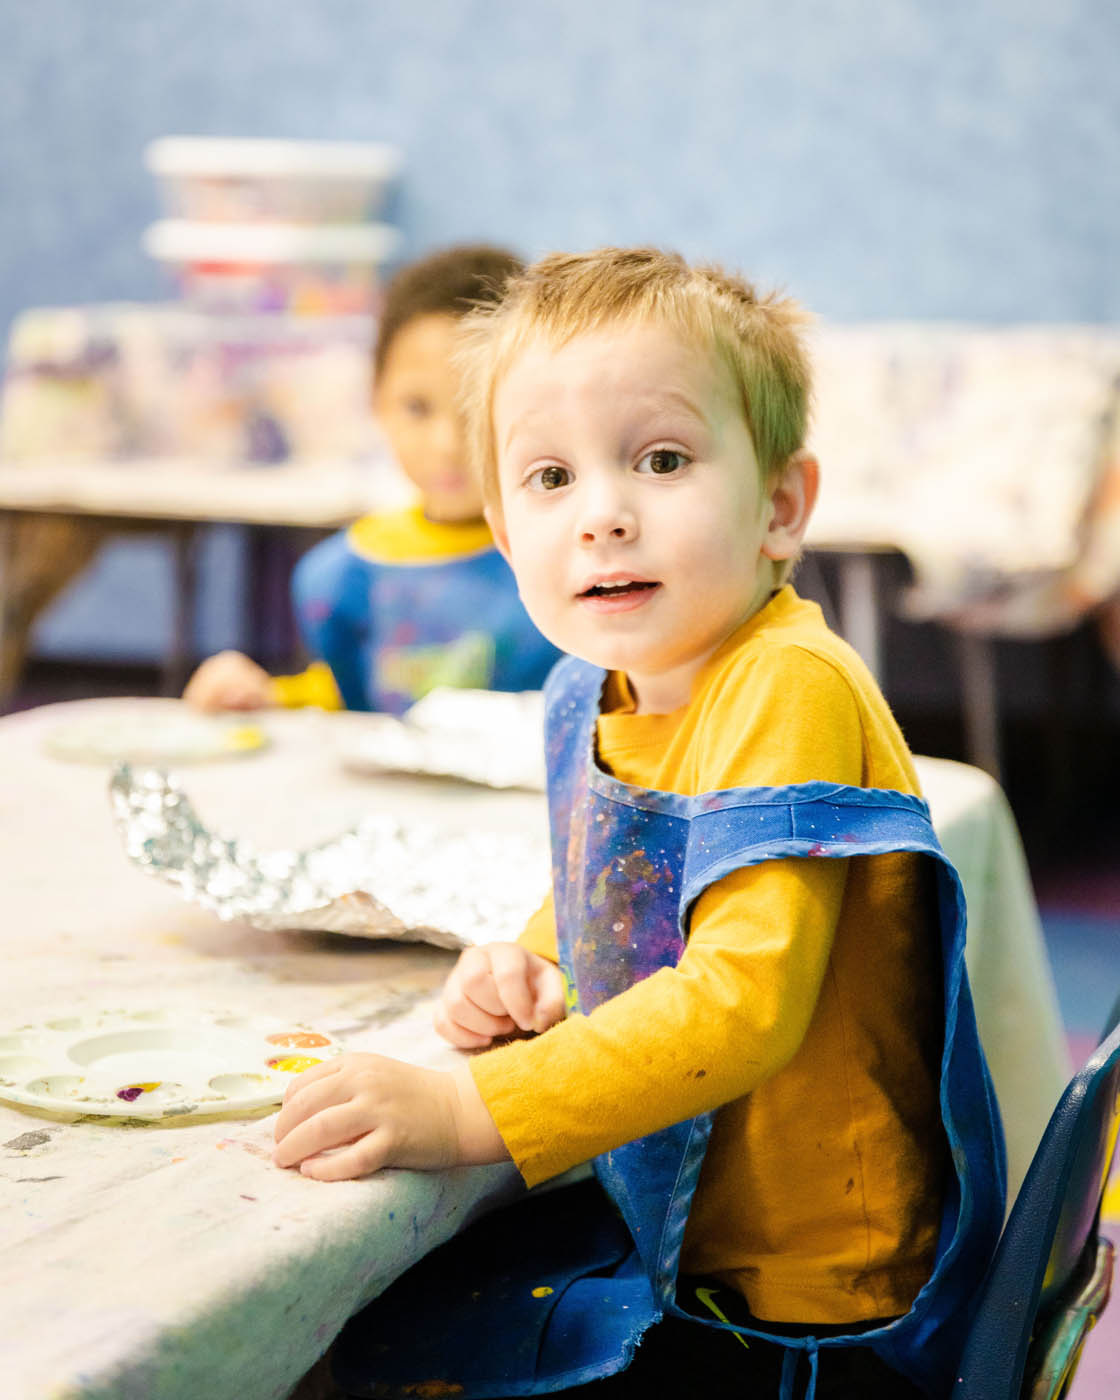 A boy in a yellow shirt in a Glen Allen toddler art class at Romp n' Roll.